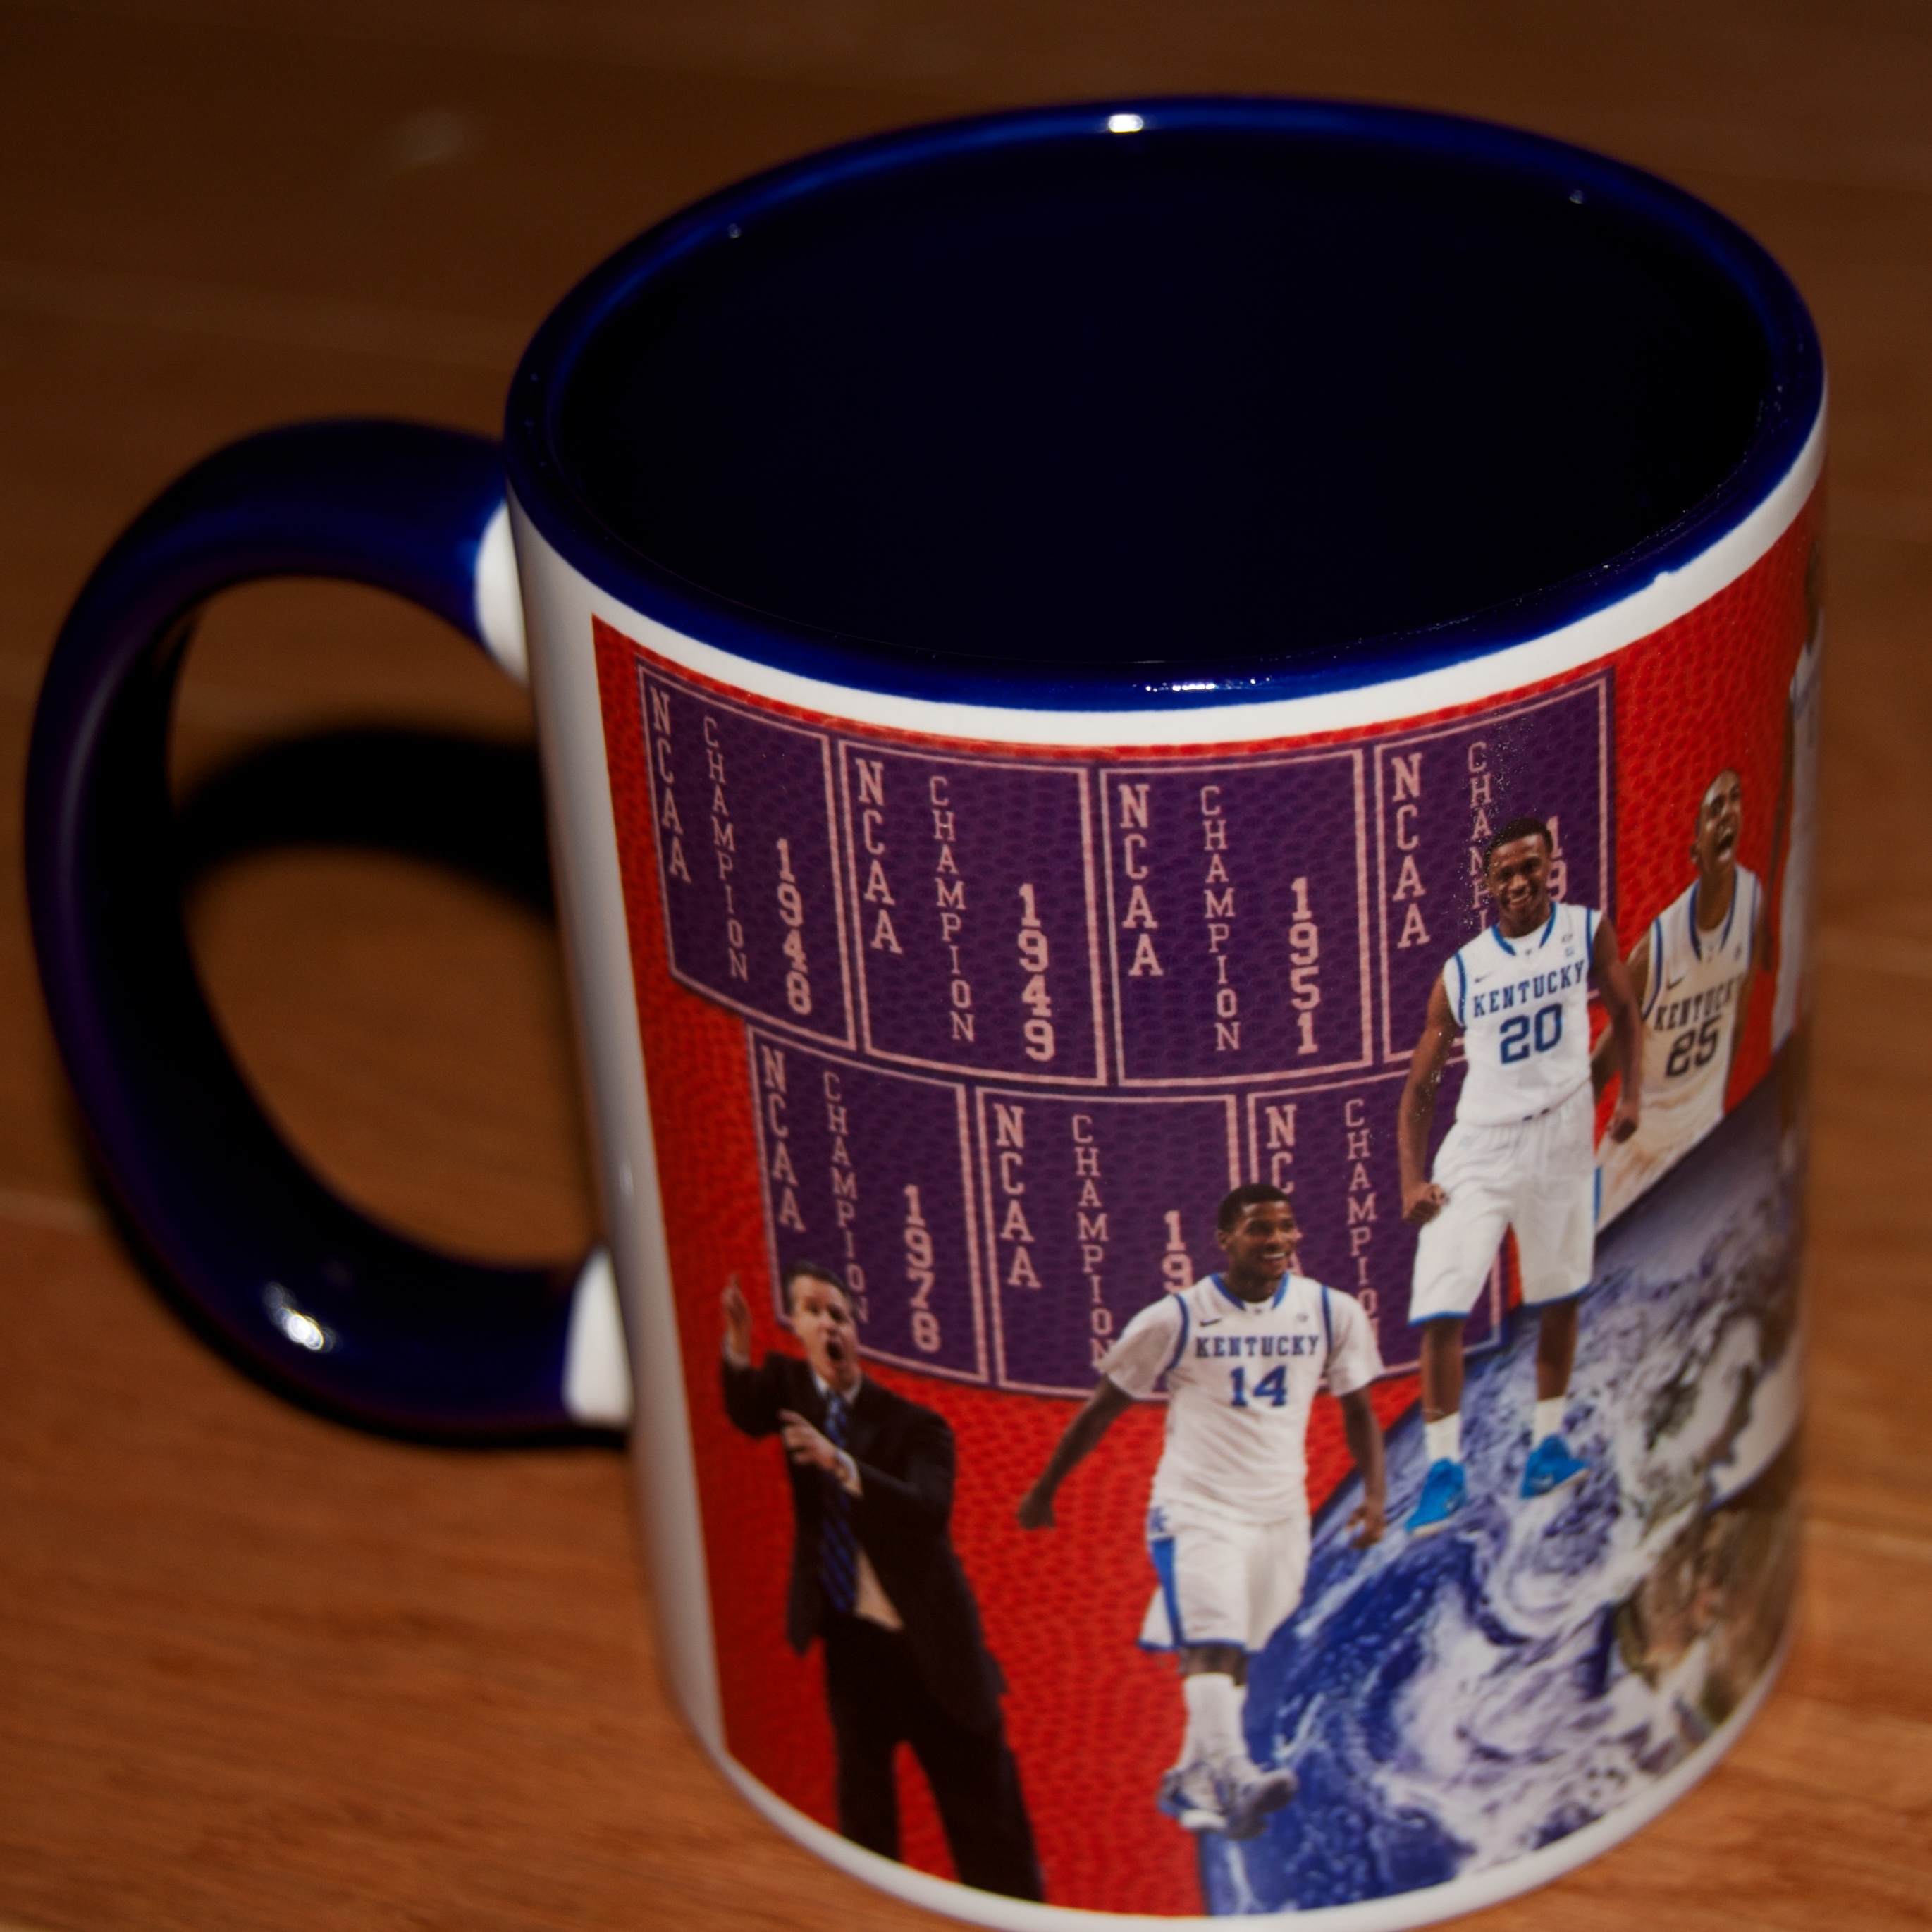 Kentucky Championship Mug made with sublimation printing